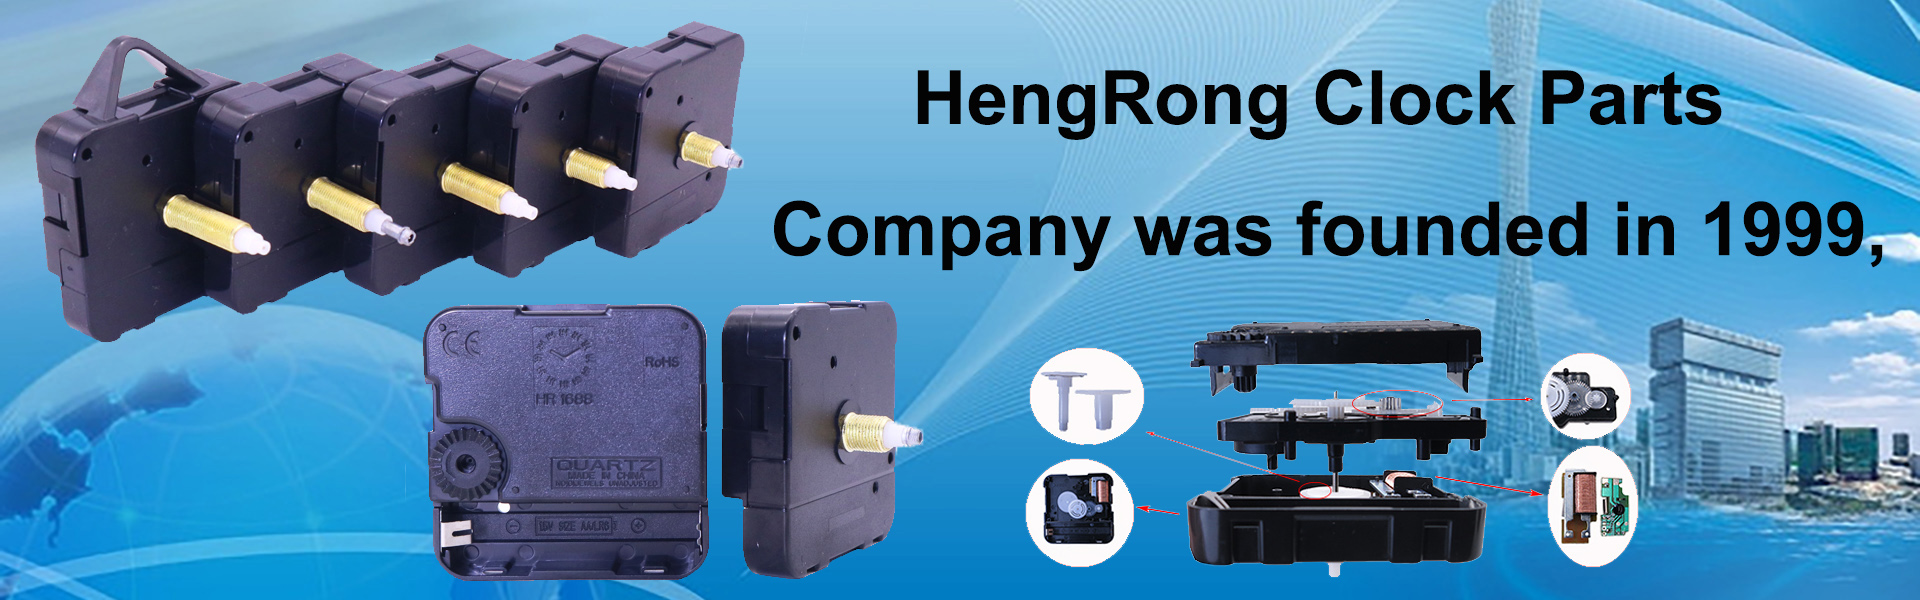 chuyển động đồng hồ, bộ phận đồng hồ, đồng hồ cúc cu,Dongguan Hengrong Hardware ELectronic Technology Co.,Ltd.